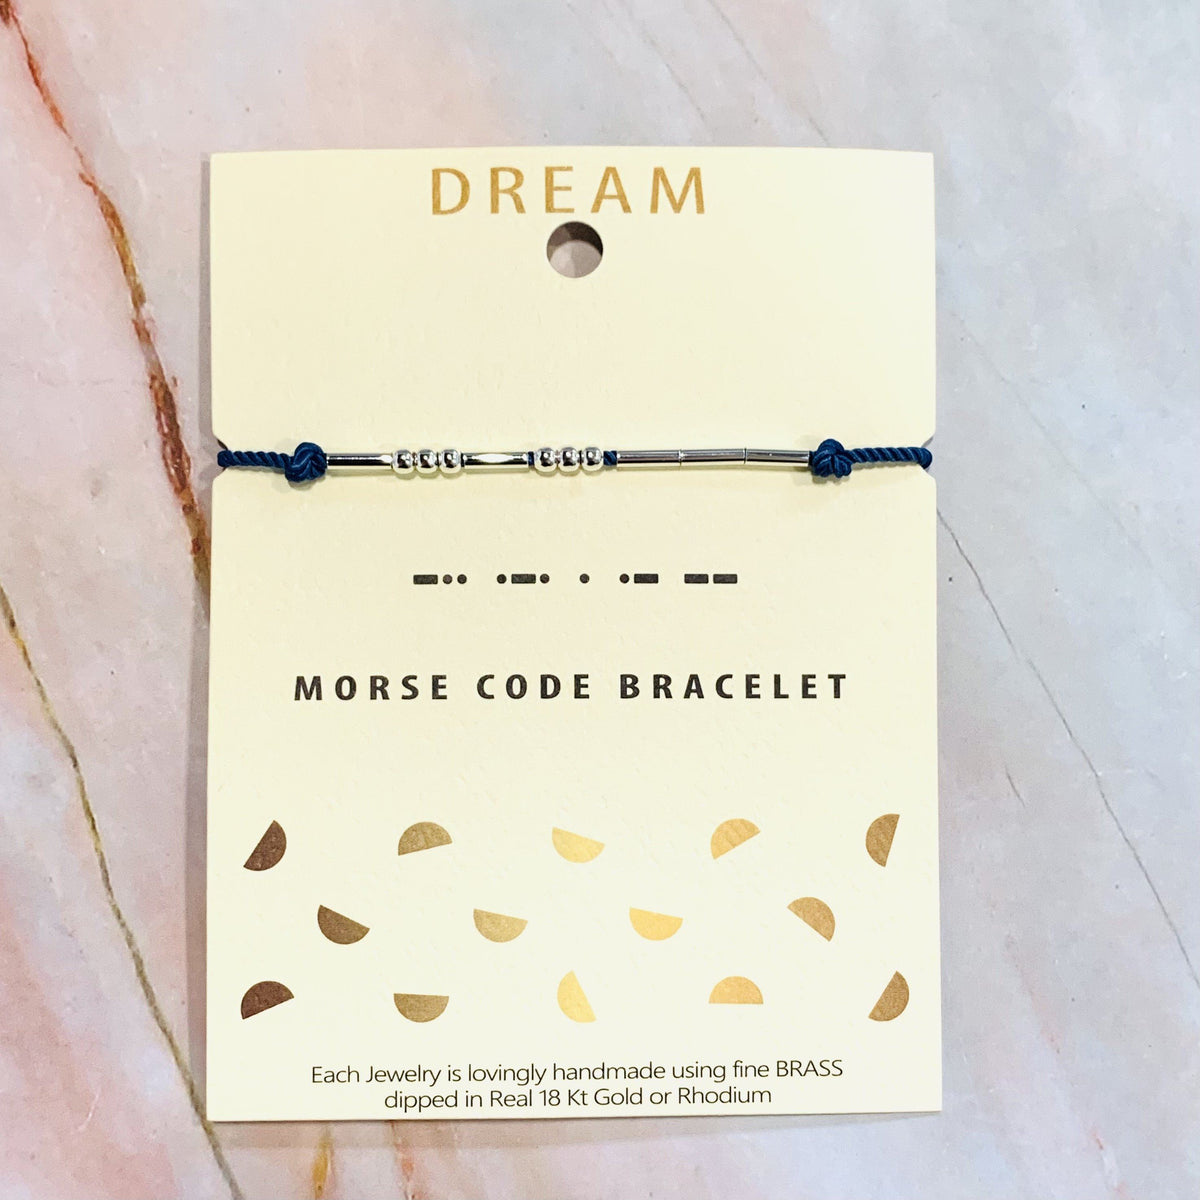 Morse Code Bracelet Lauren-Spencer Dream 